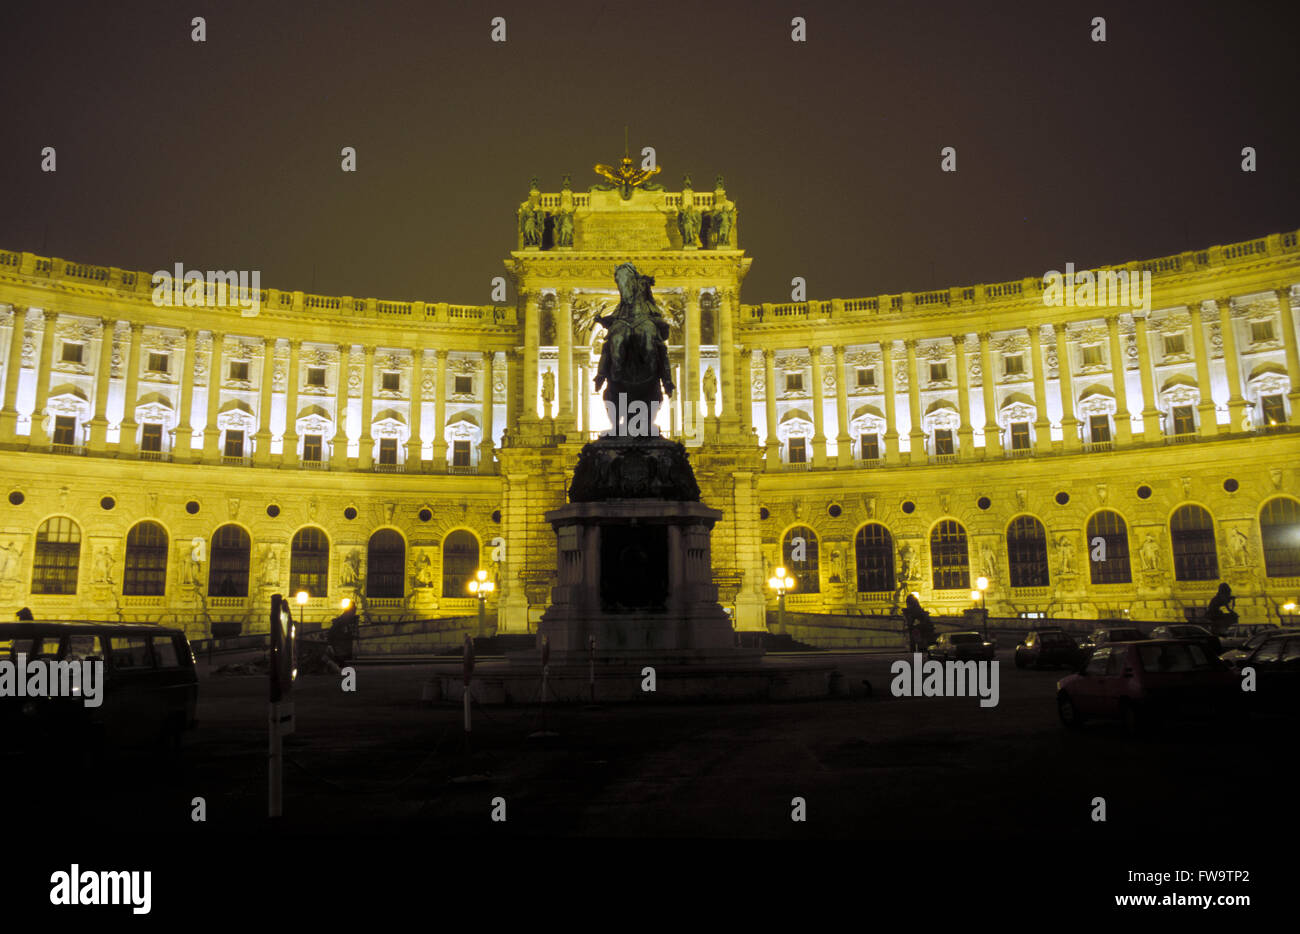 AUT, l'Autriche, Vienne, Prinz Eugen monument situé en face de la Neue Hofburg. Tau, Oesterreich, Wien, Prinz Eugen Denkmal vor der N Banque D'Images